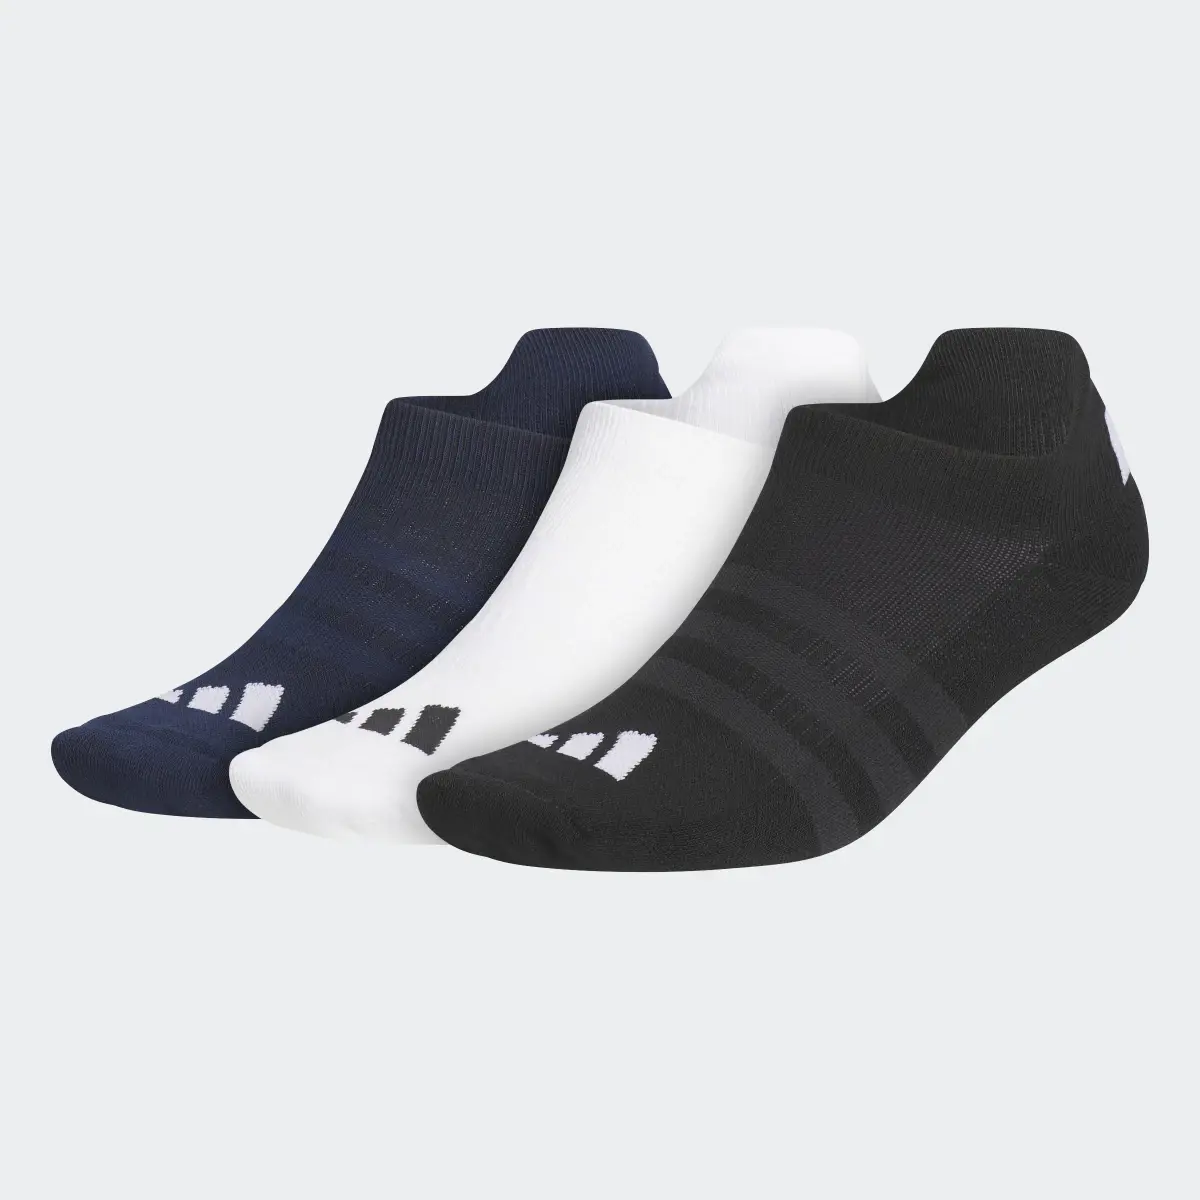 Adidas Golf Ankle Socks 3 Pairs. 2